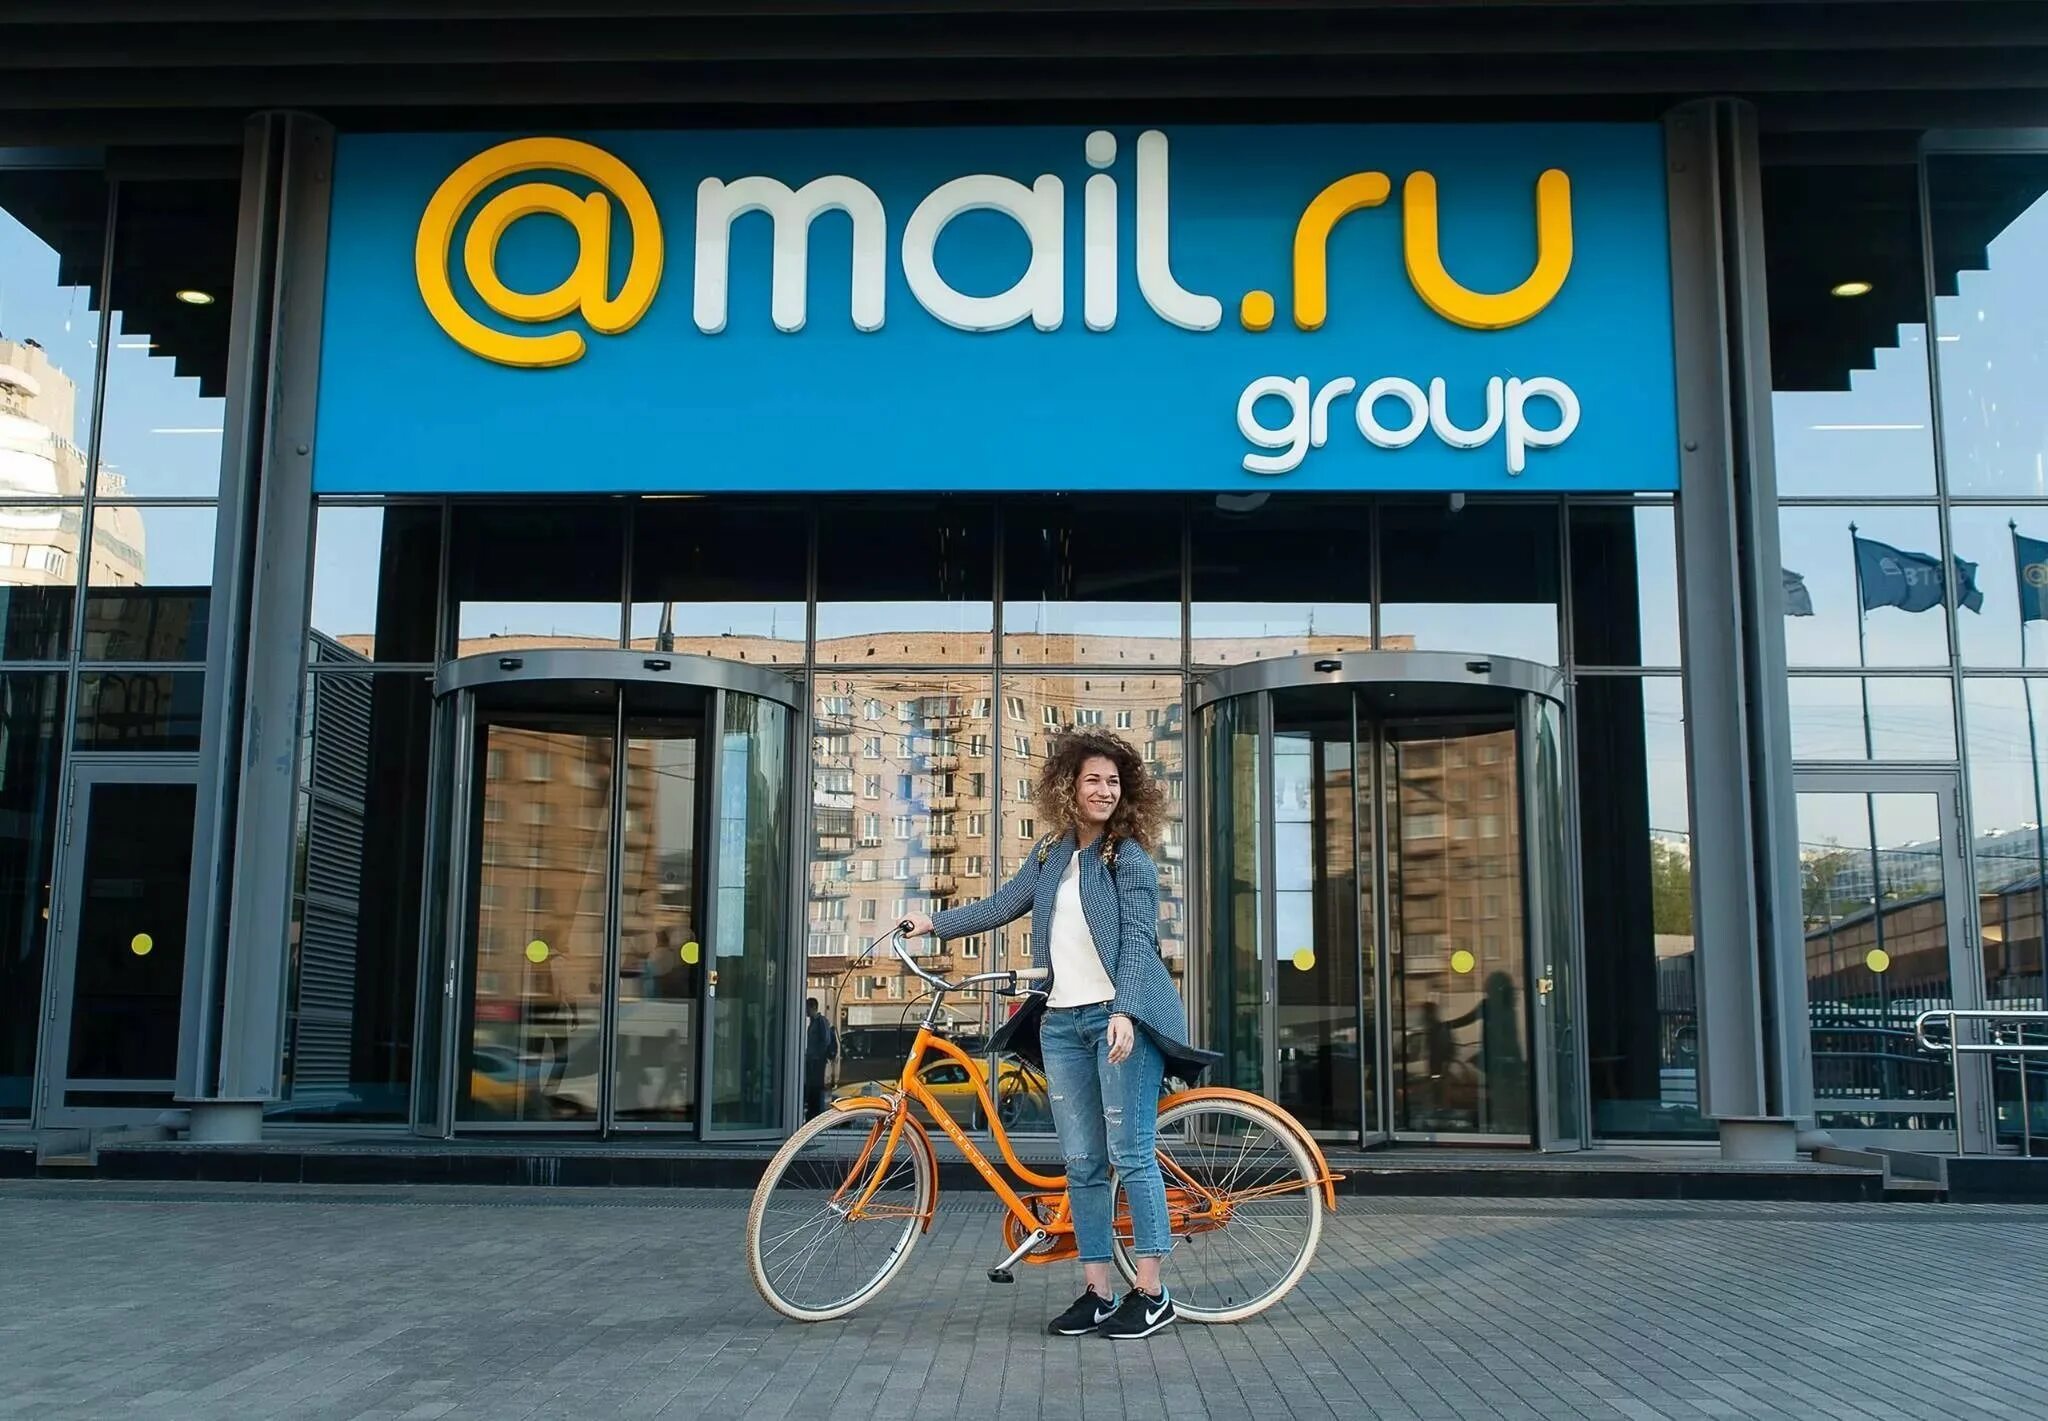 Touch mail ru message. Майл ру. С М Л. Mail ru Group. Майл Гроуп.